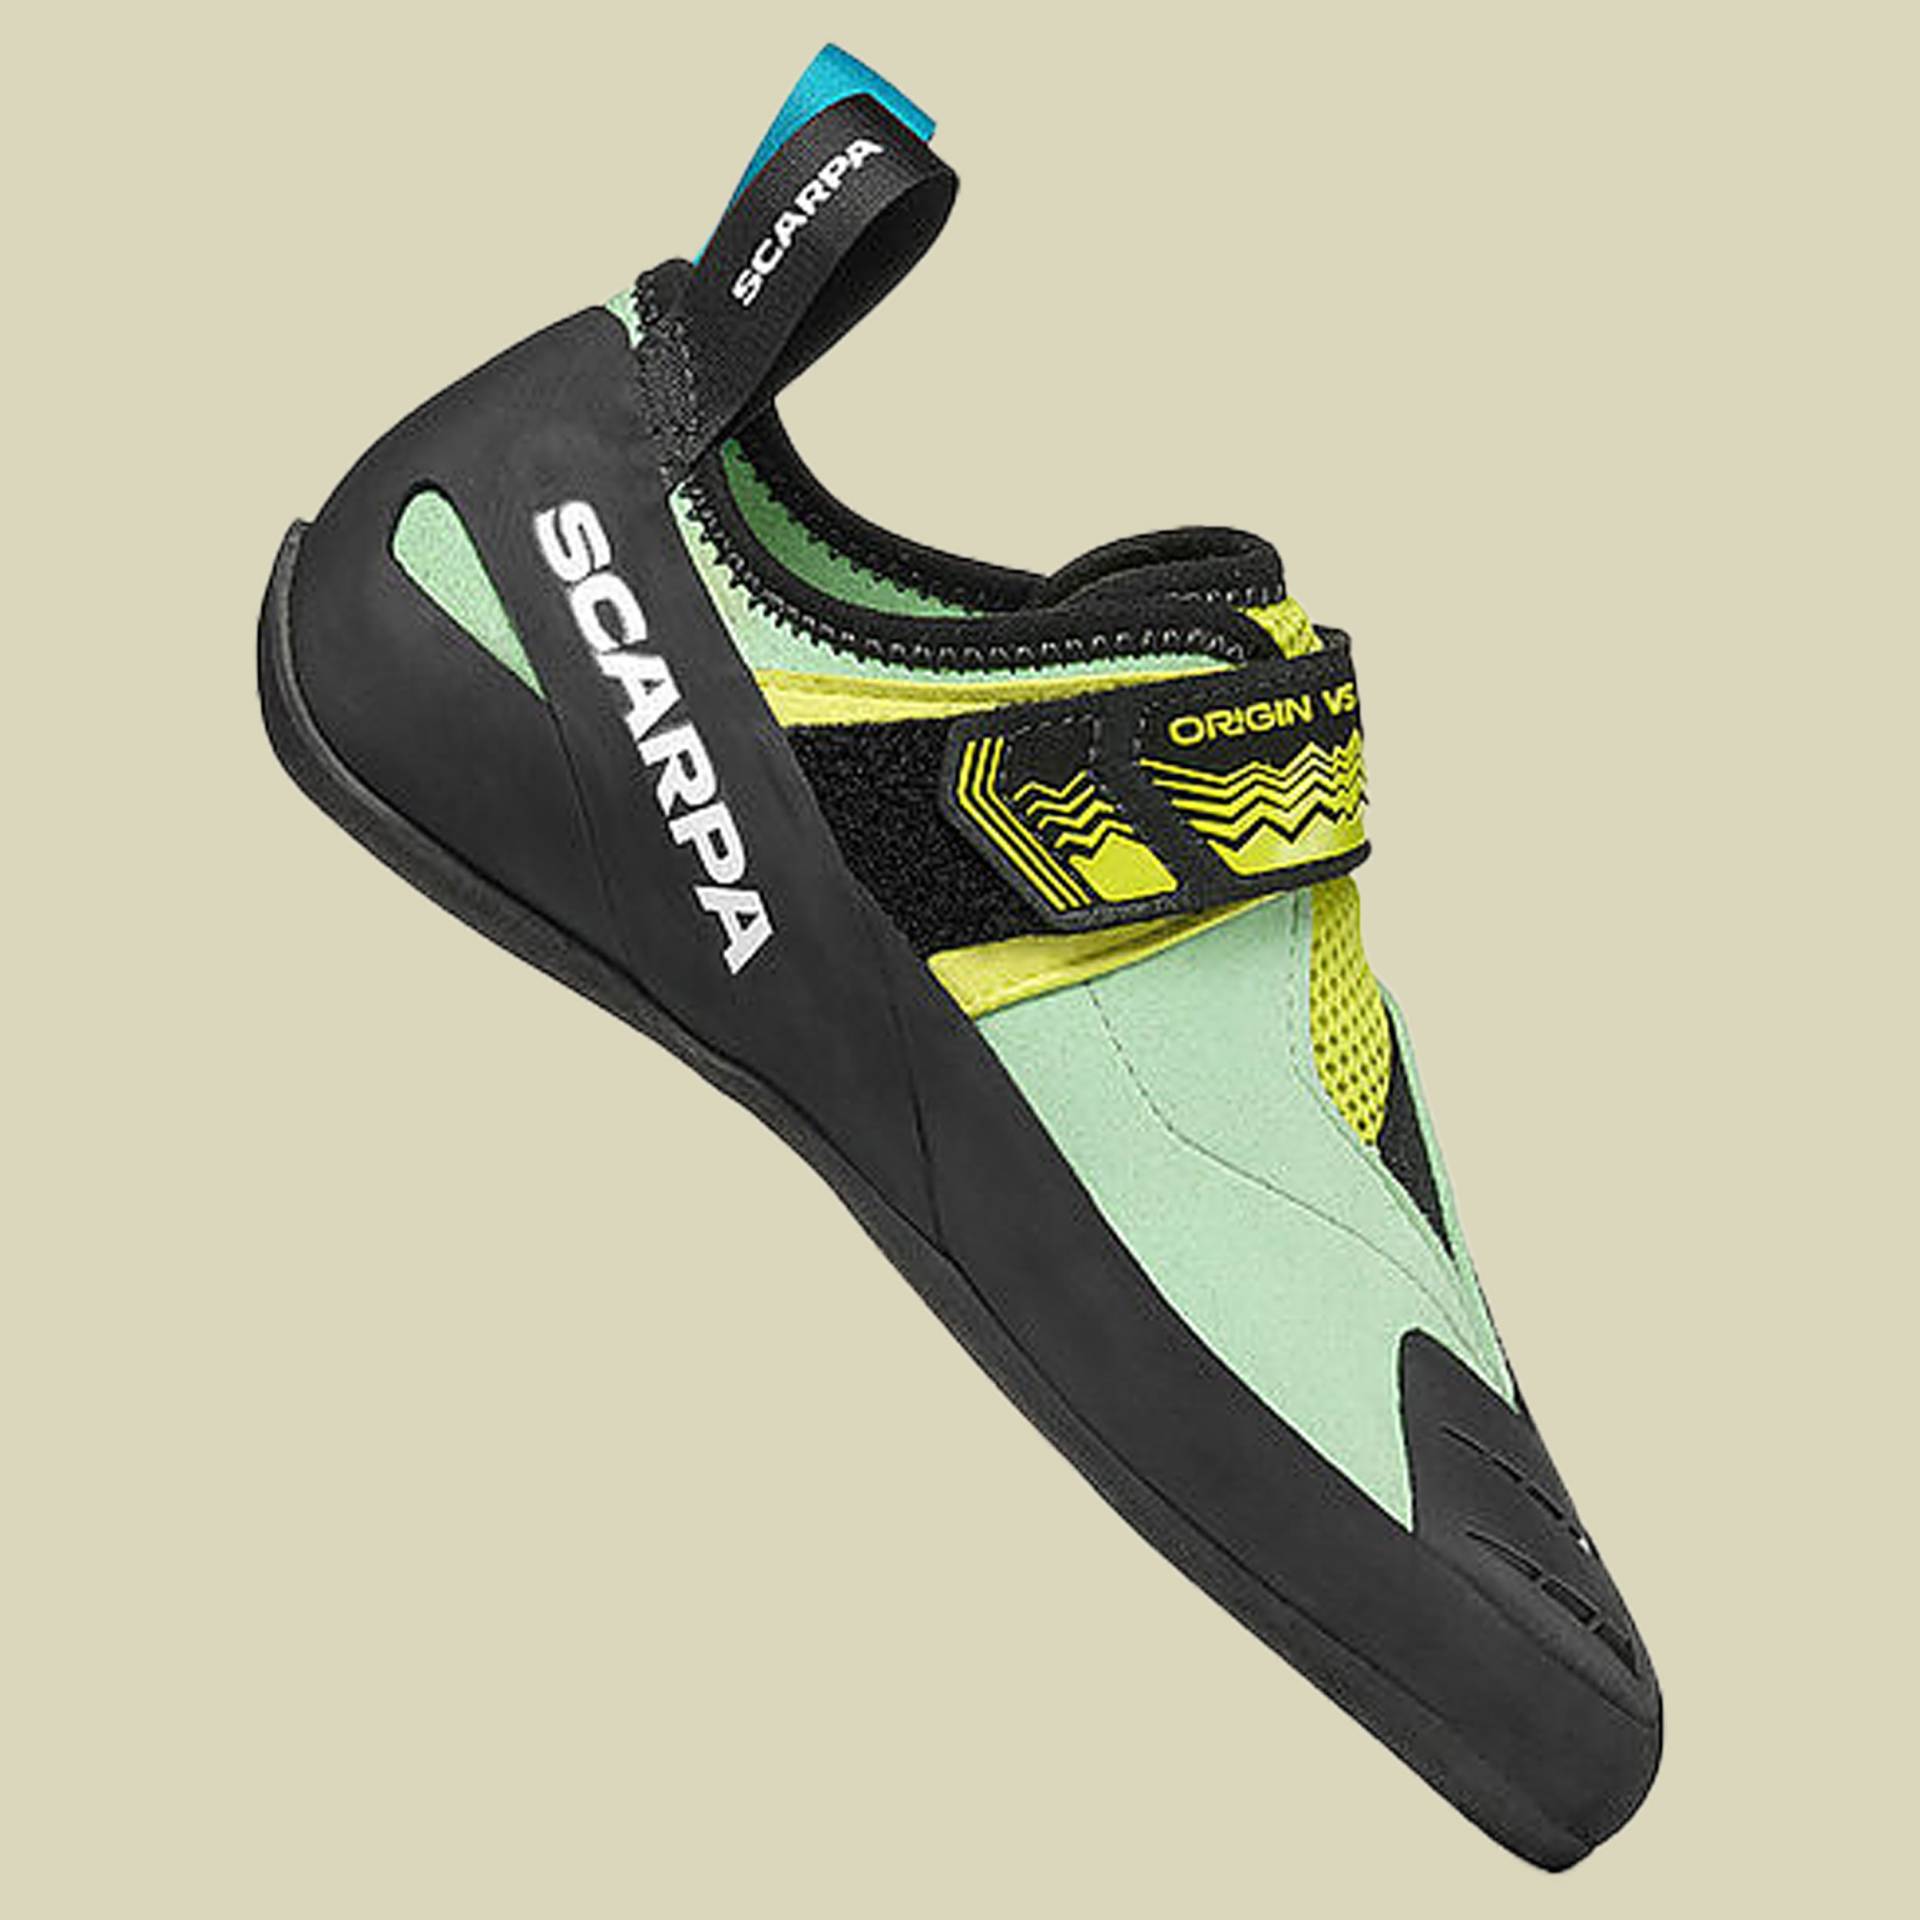 Origin VS Women Größe 40 Farbe pastel green/lime von Scarpa Schuhe